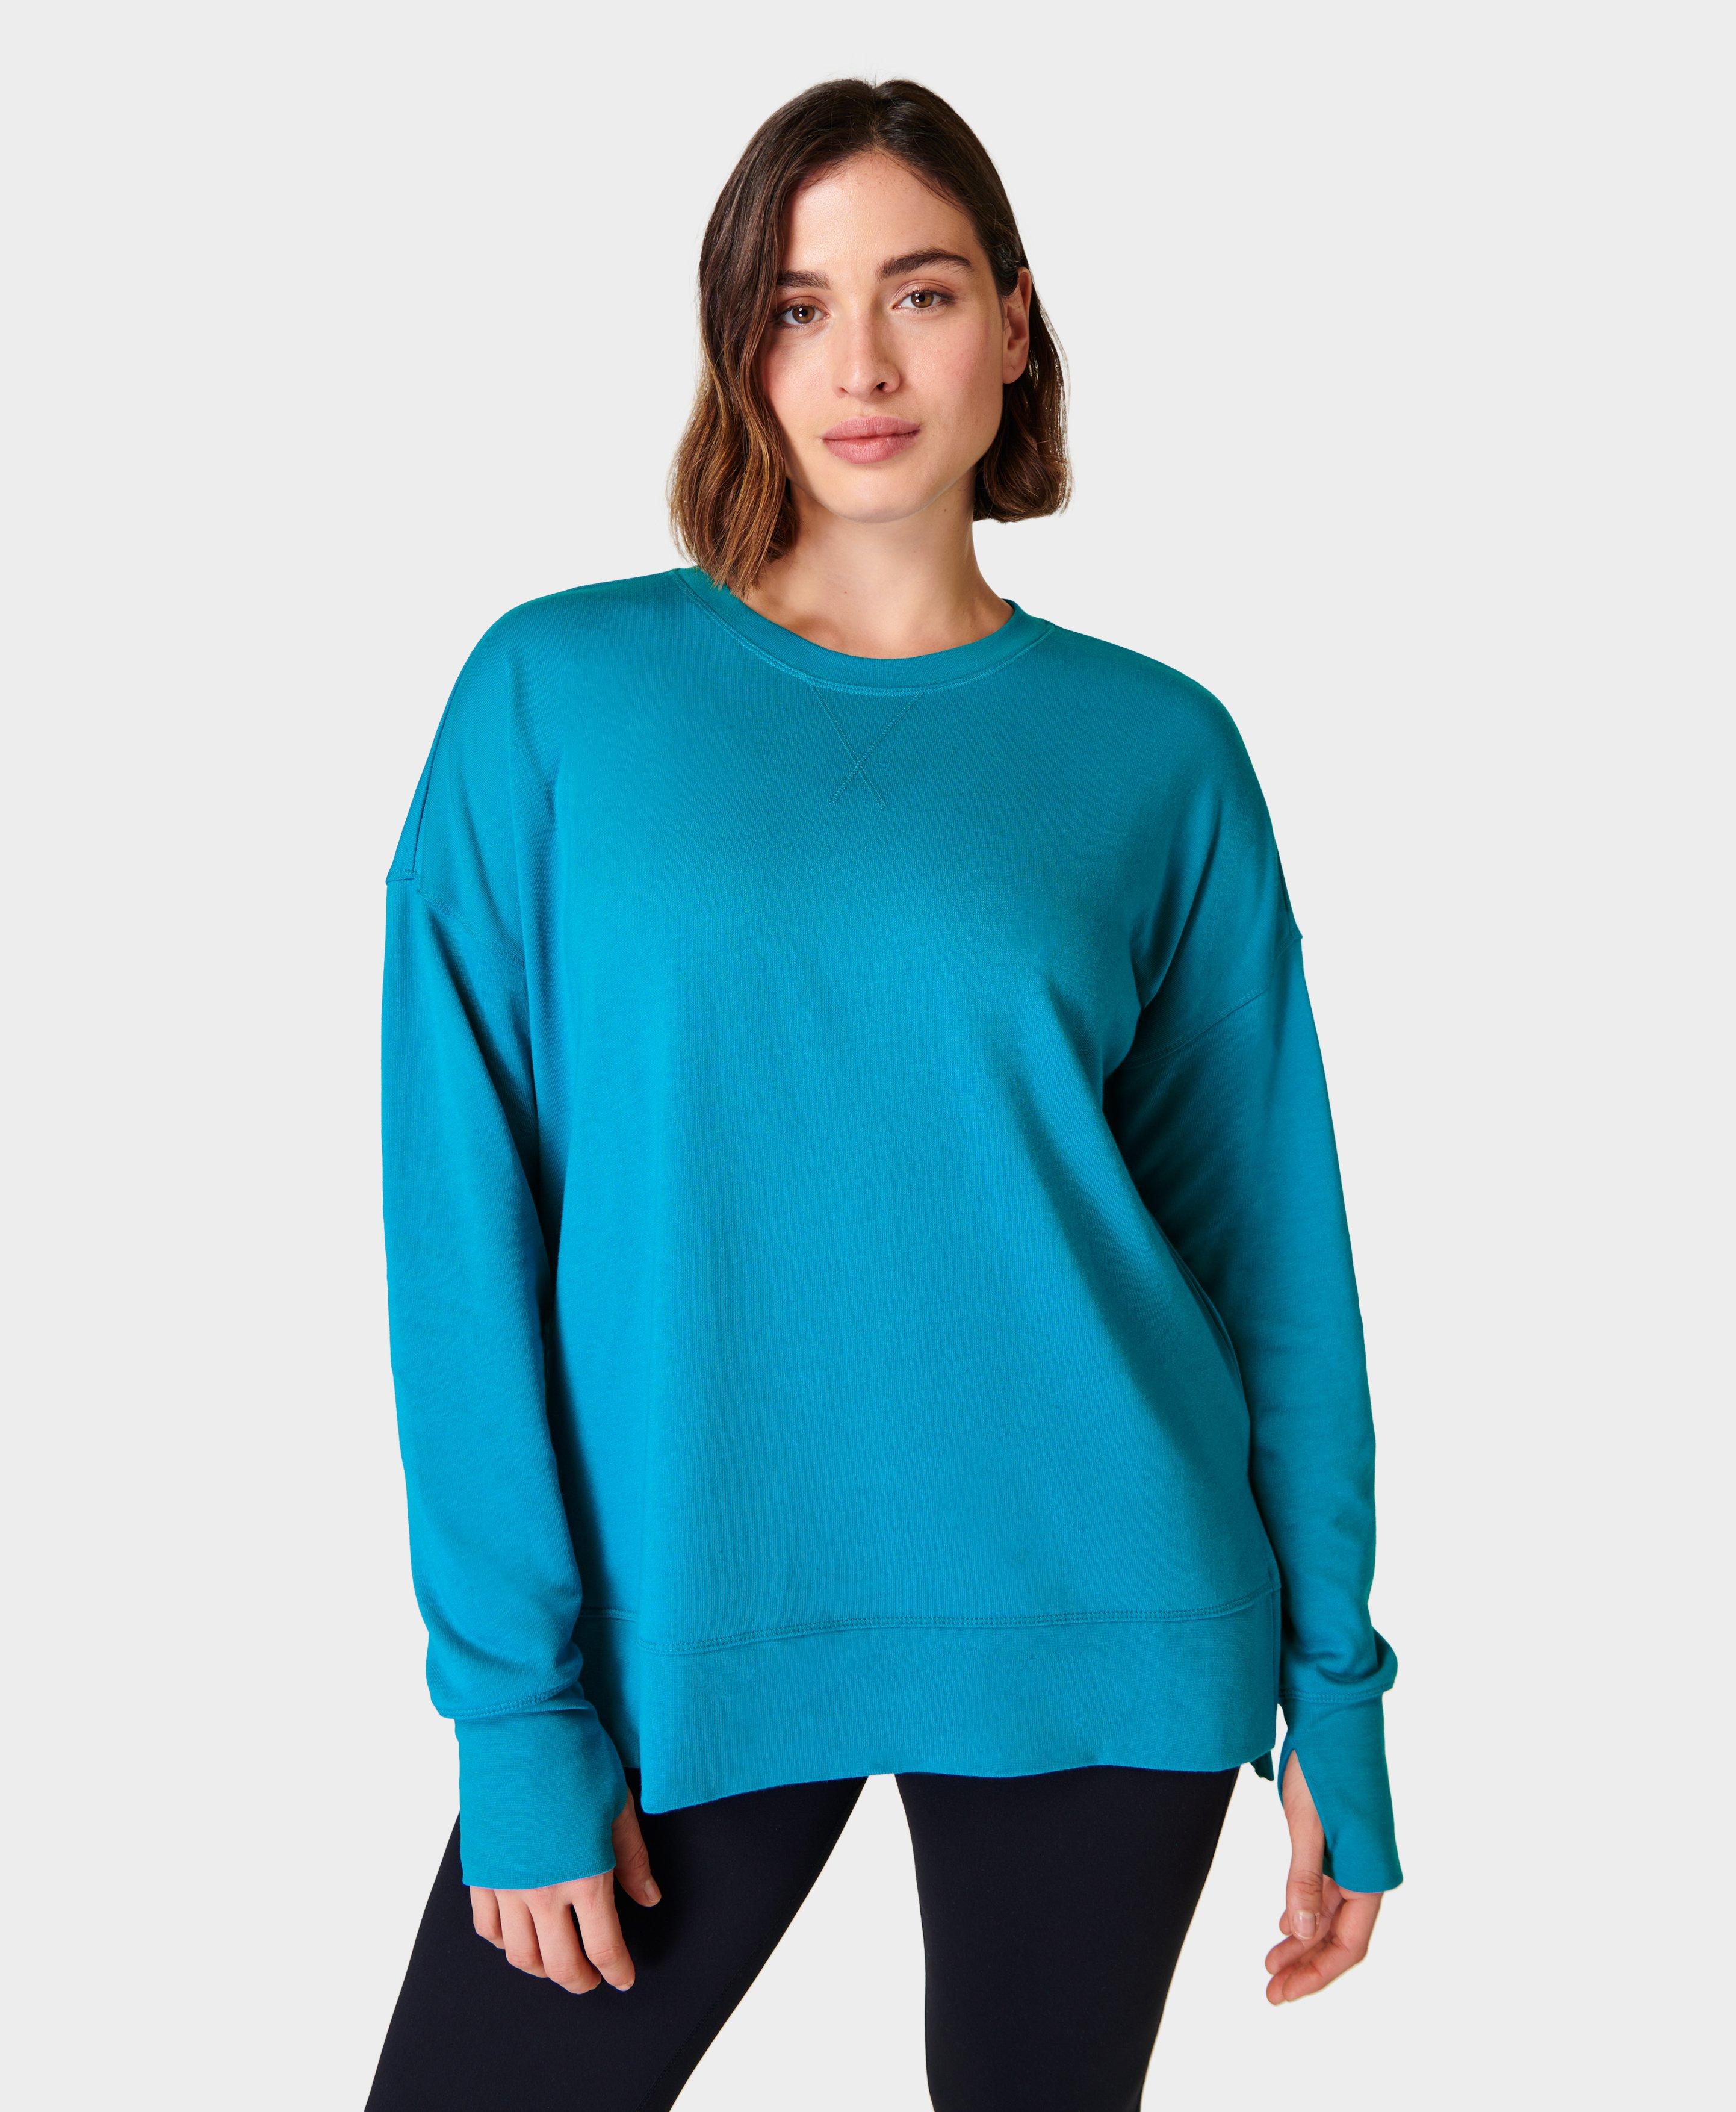 Women's Hoodies & Sweatshirts | Workout Shirts | Sweaty Betty